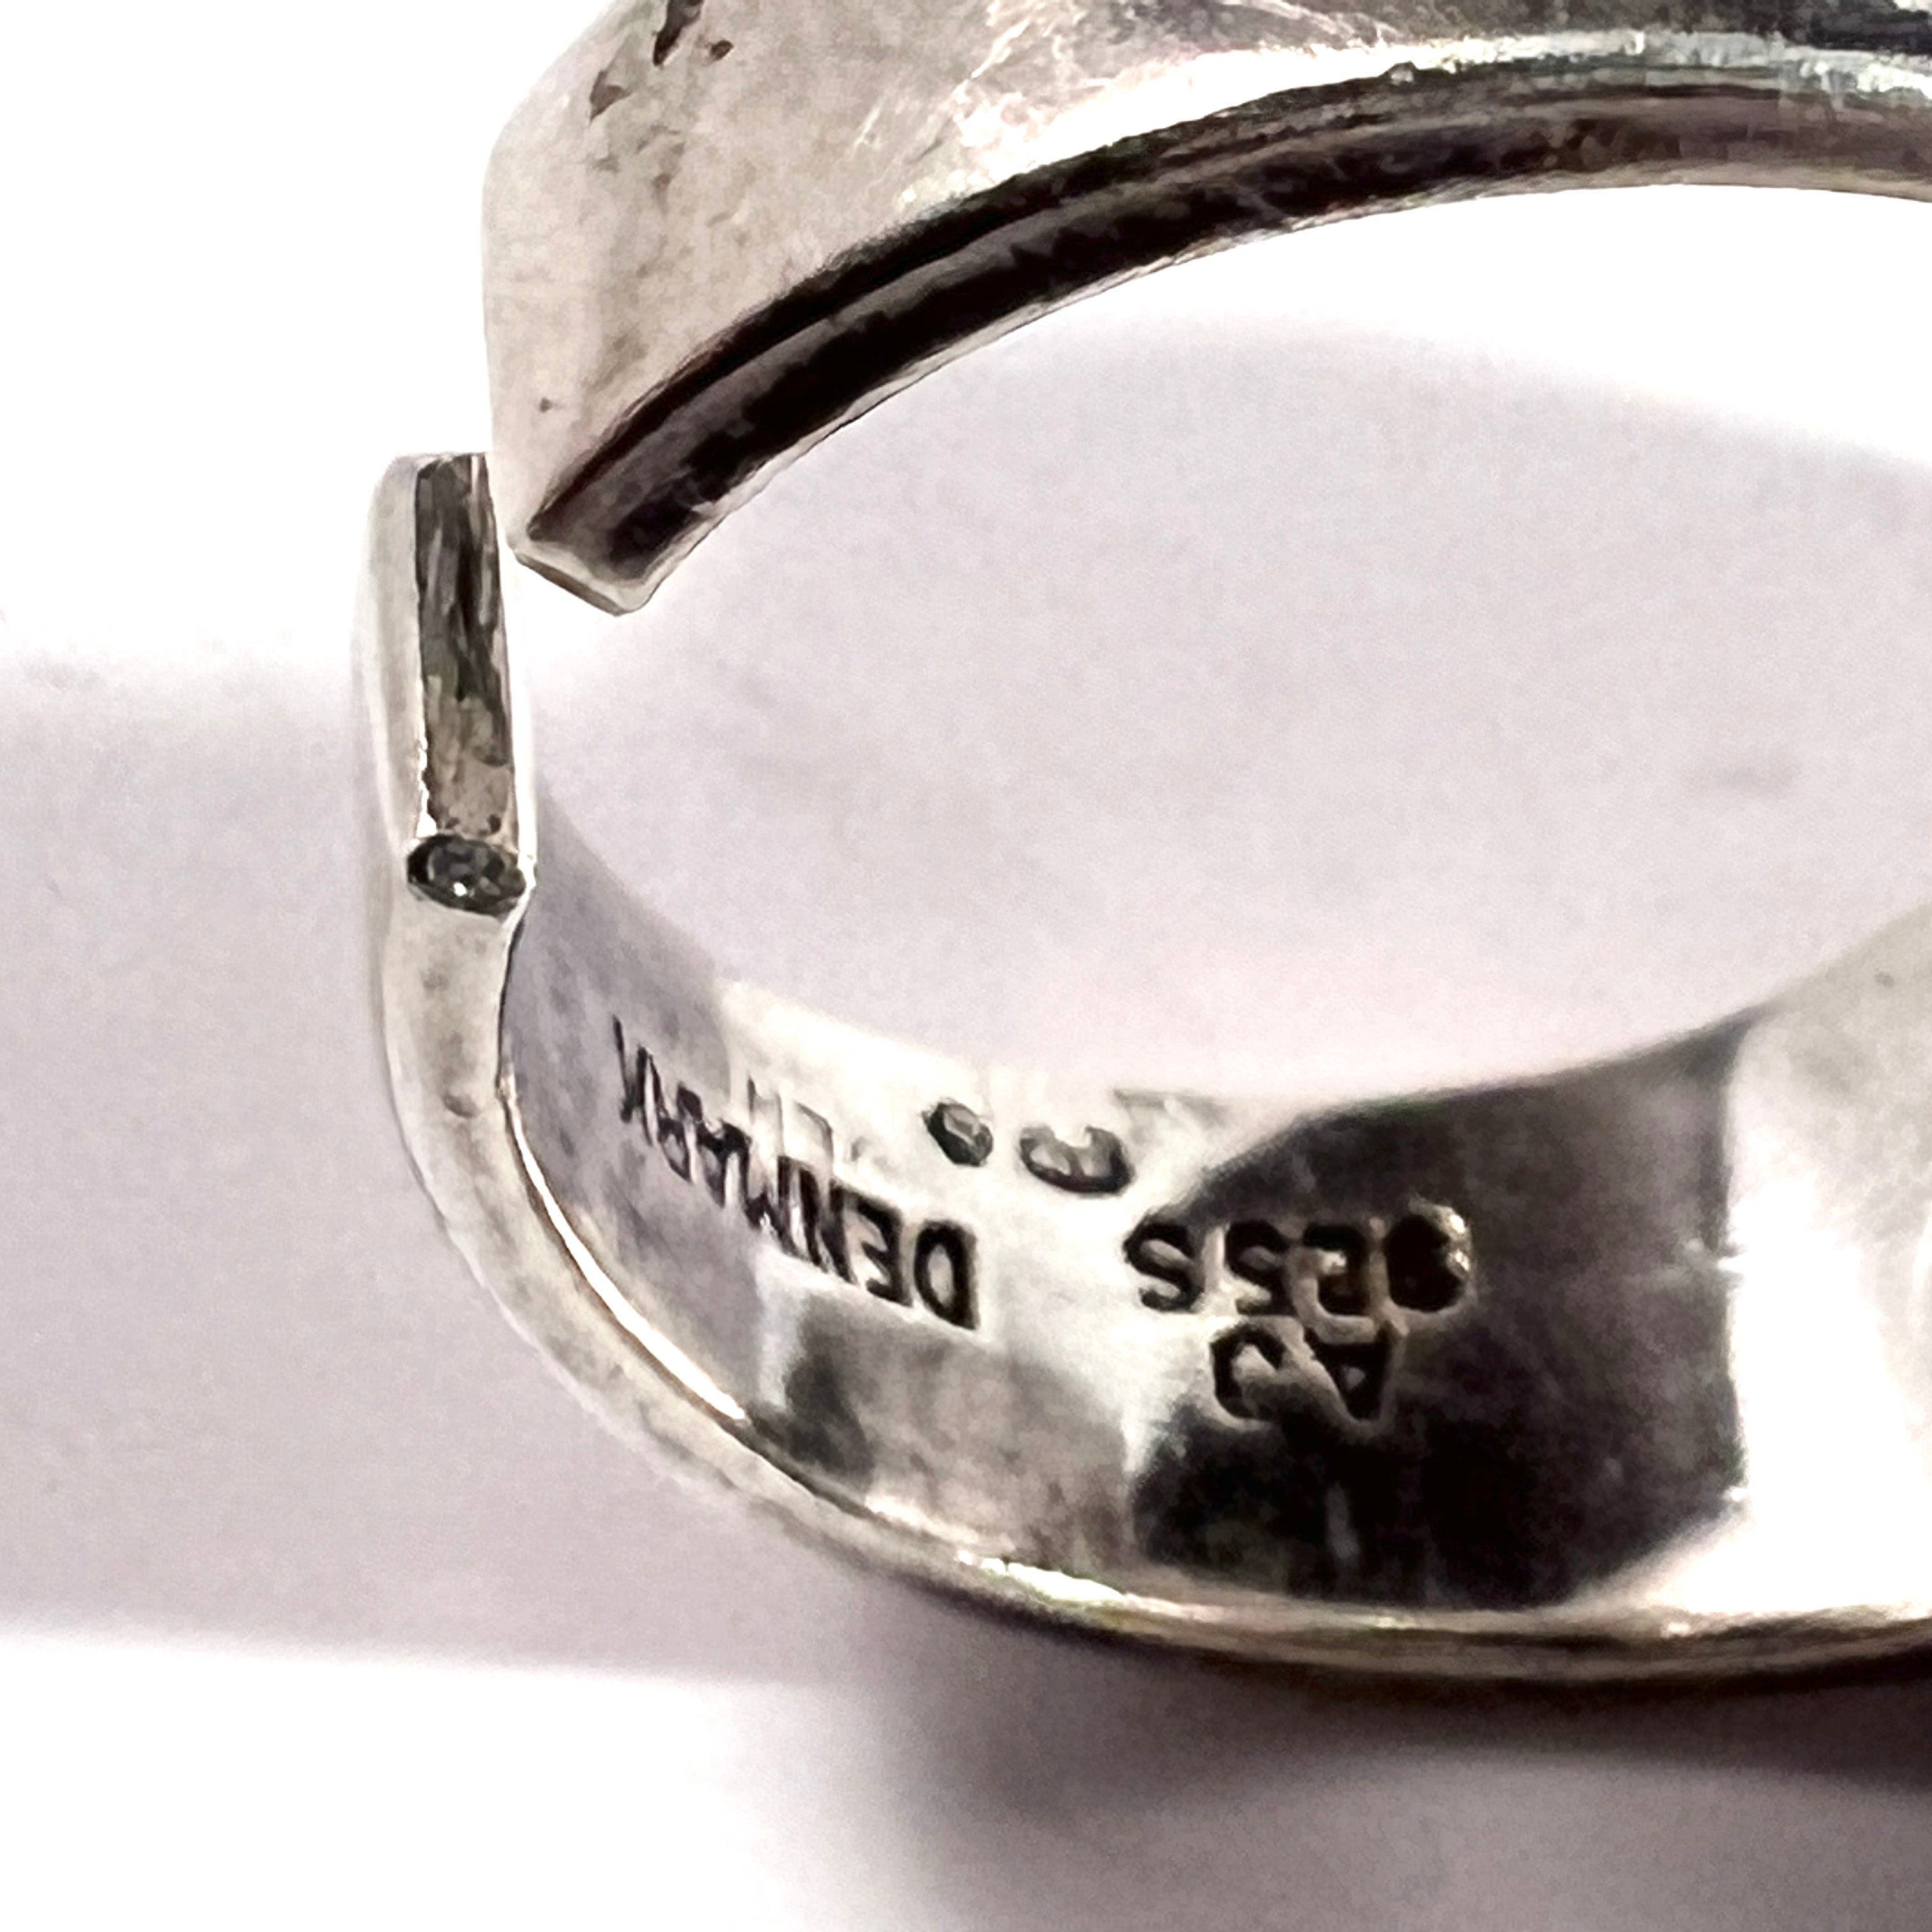 Arne Johansen, Denmark 1960s. Vintage Sterling Silver Abalone Ring.